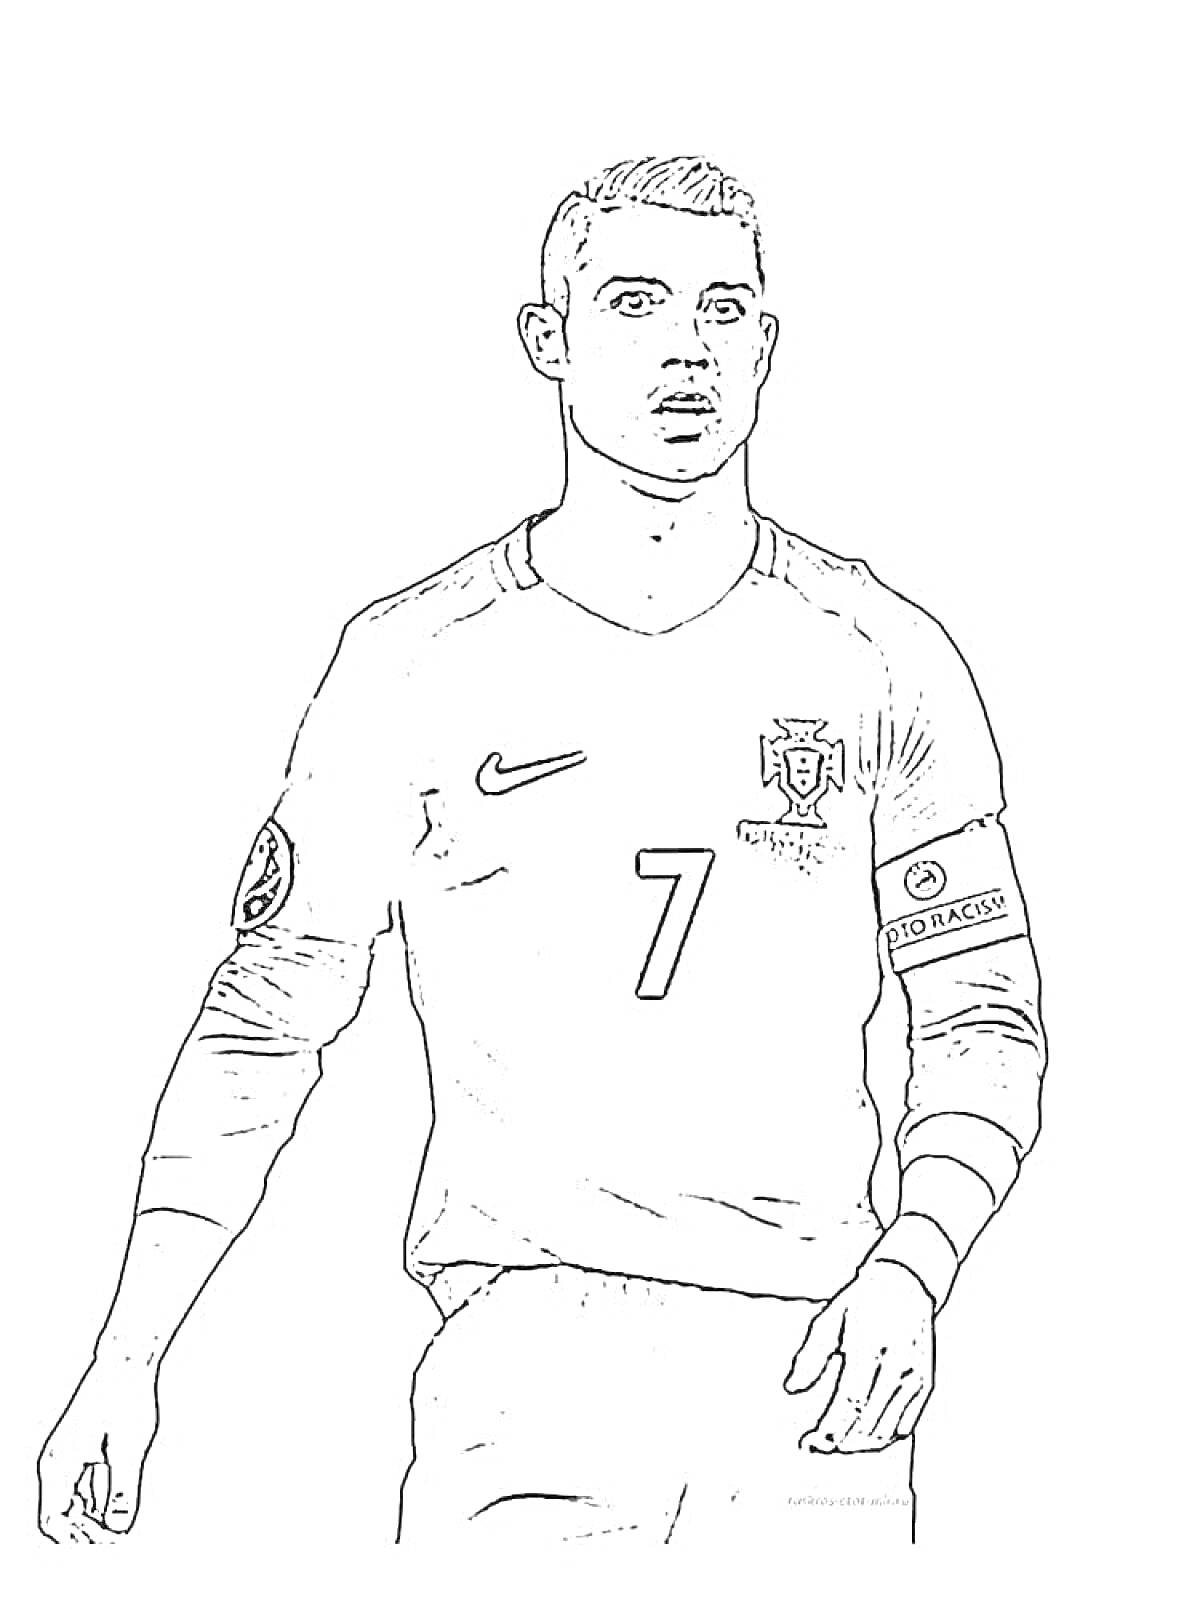 Раскраска Футболист в форме сборной Португалии с номером 7 на футболке и капитанской повязкой